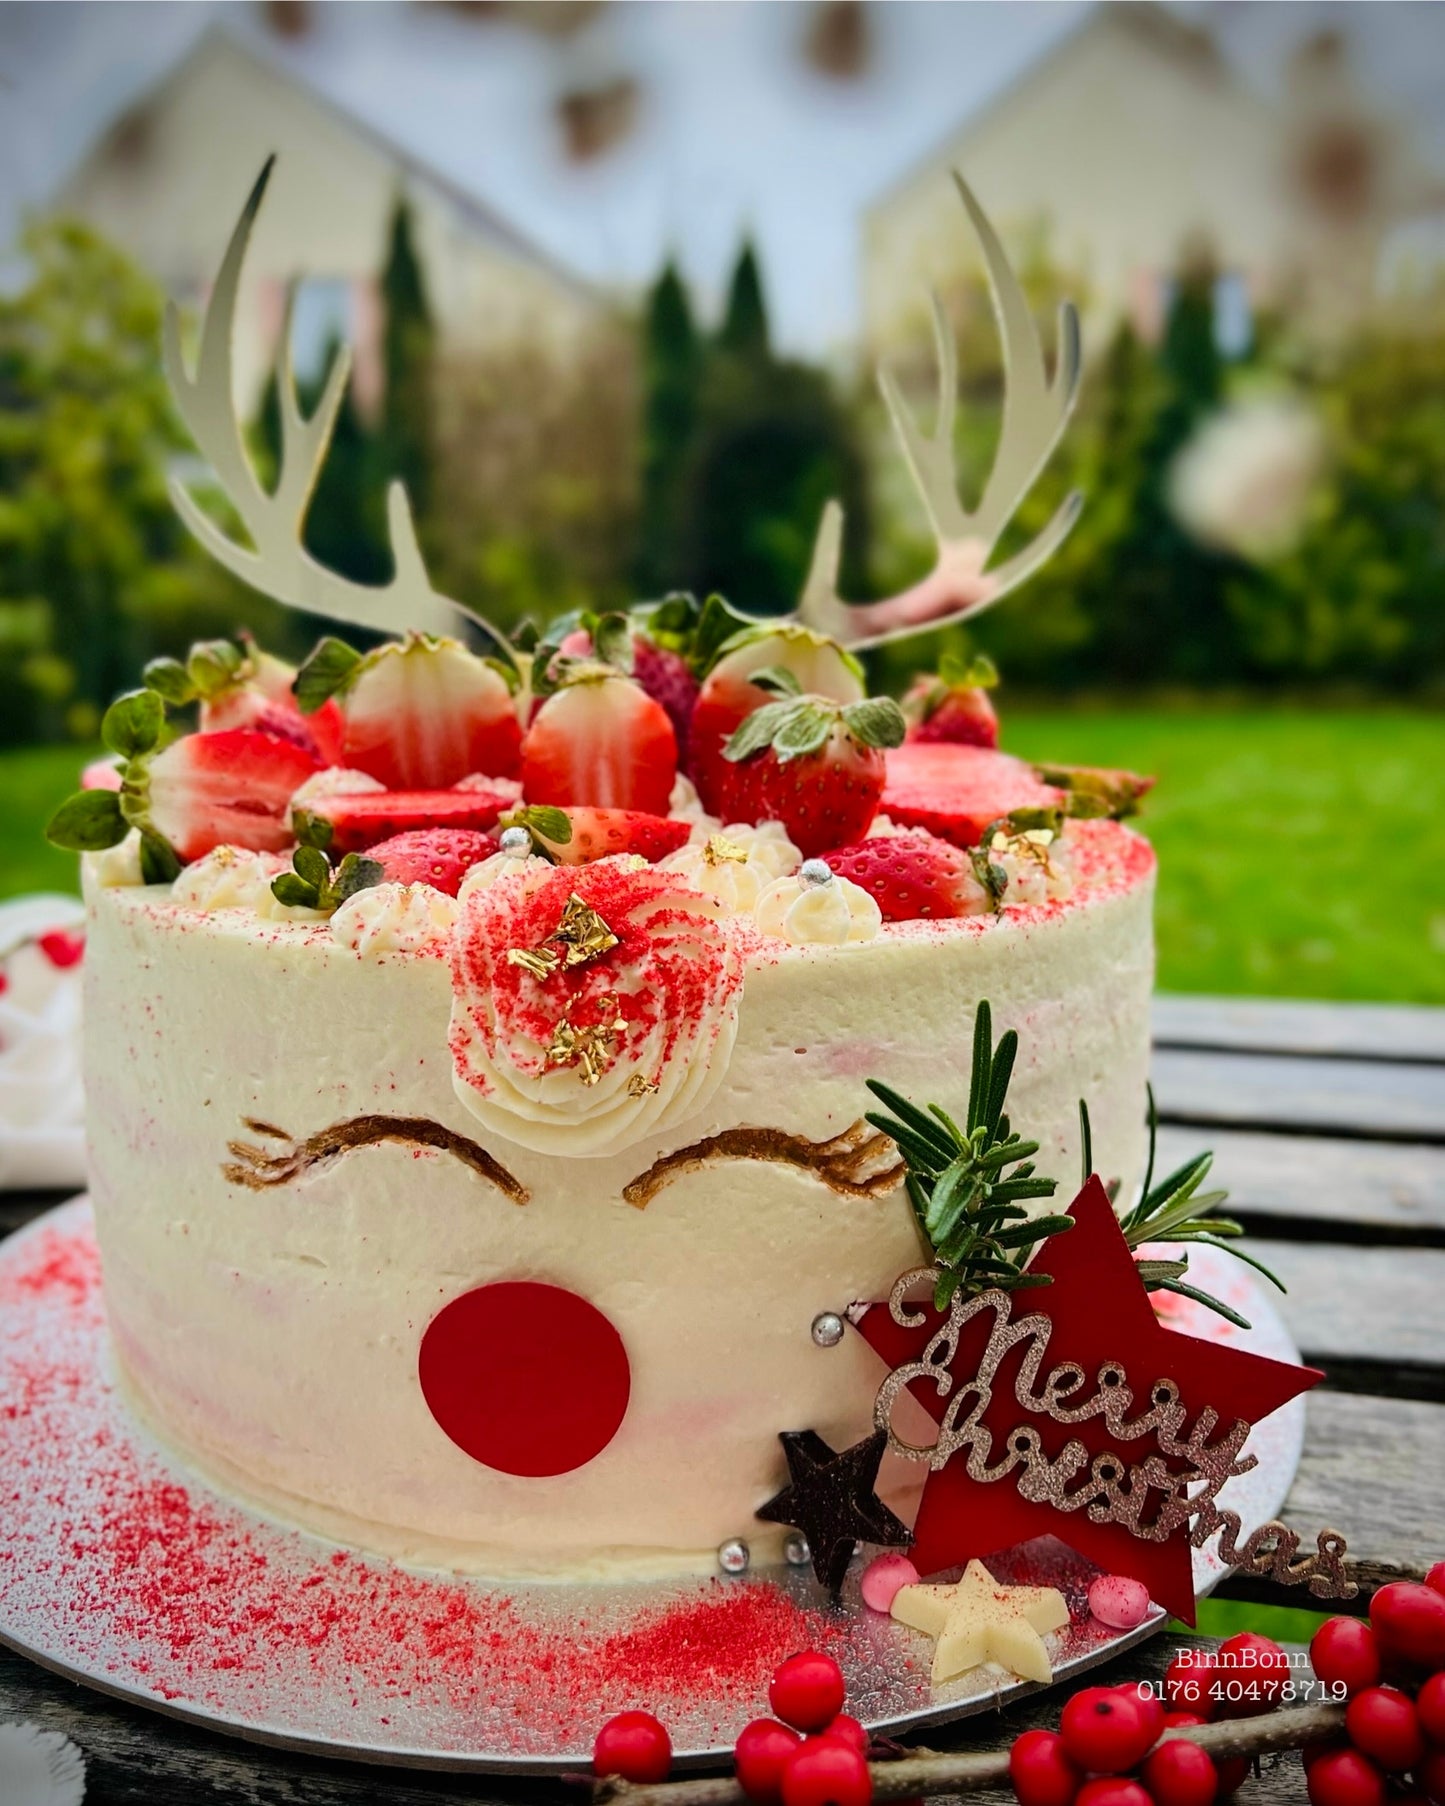 31. Torte "Magical Reindeer" mit frischen Erdbeeren und feinsten Creme 22 cm